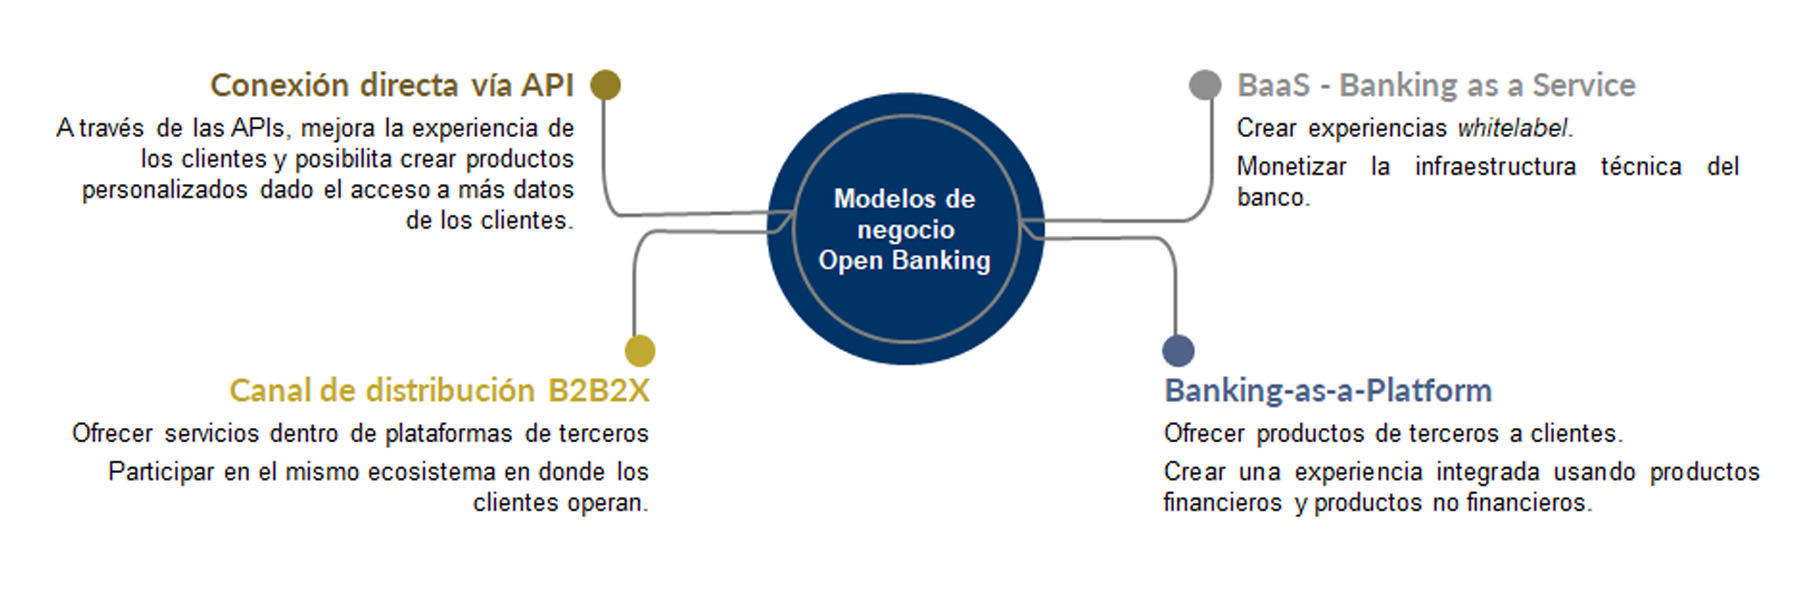 Modelos de negocio Open Banking